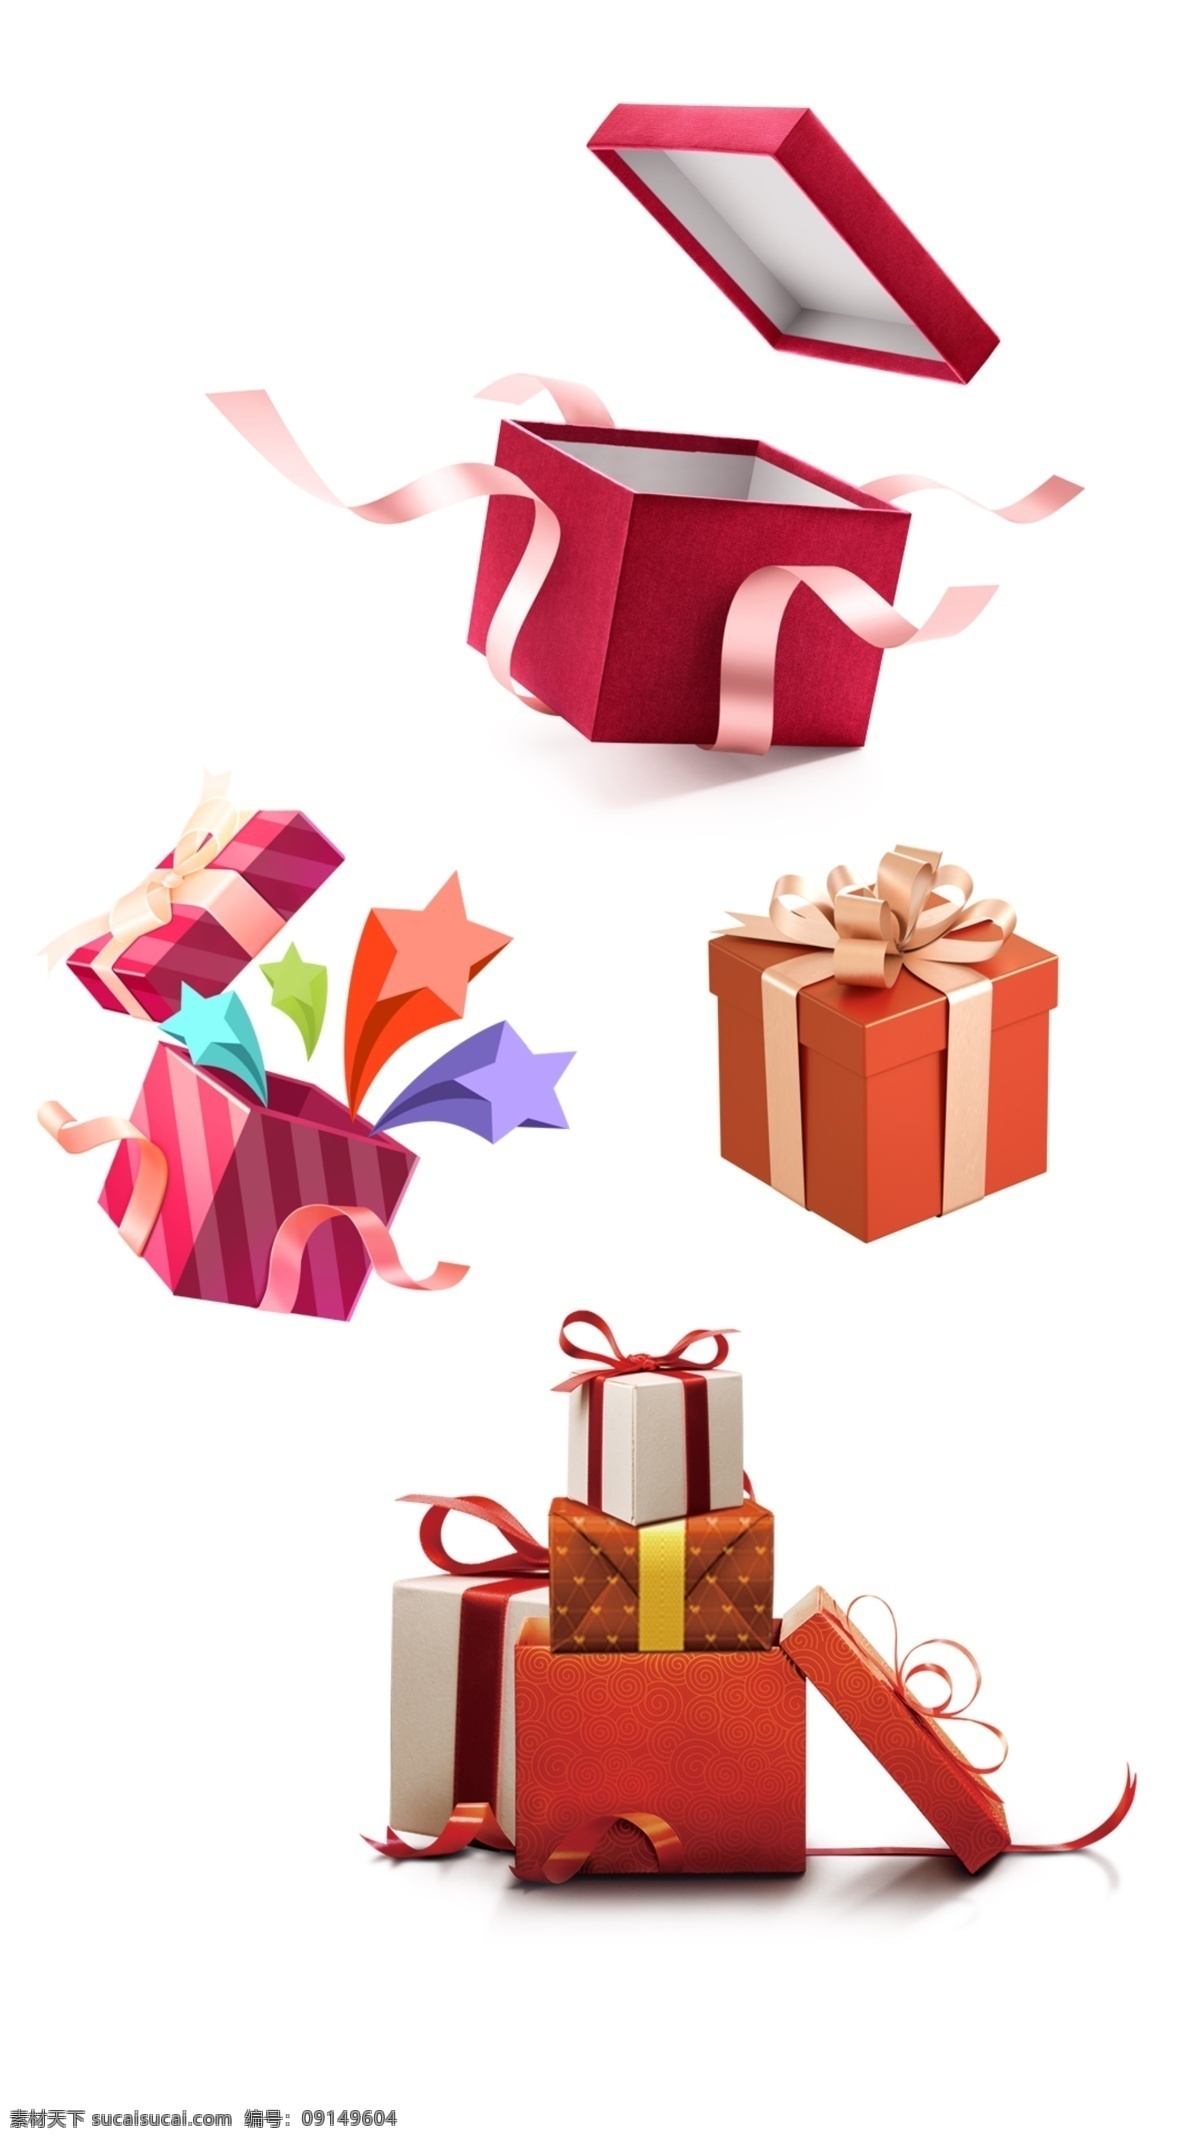 礼物 礼品盒图片 礼品 礼品盒 包装 红色 日用品 礼物素材 png素材 ps 设计素材 分层